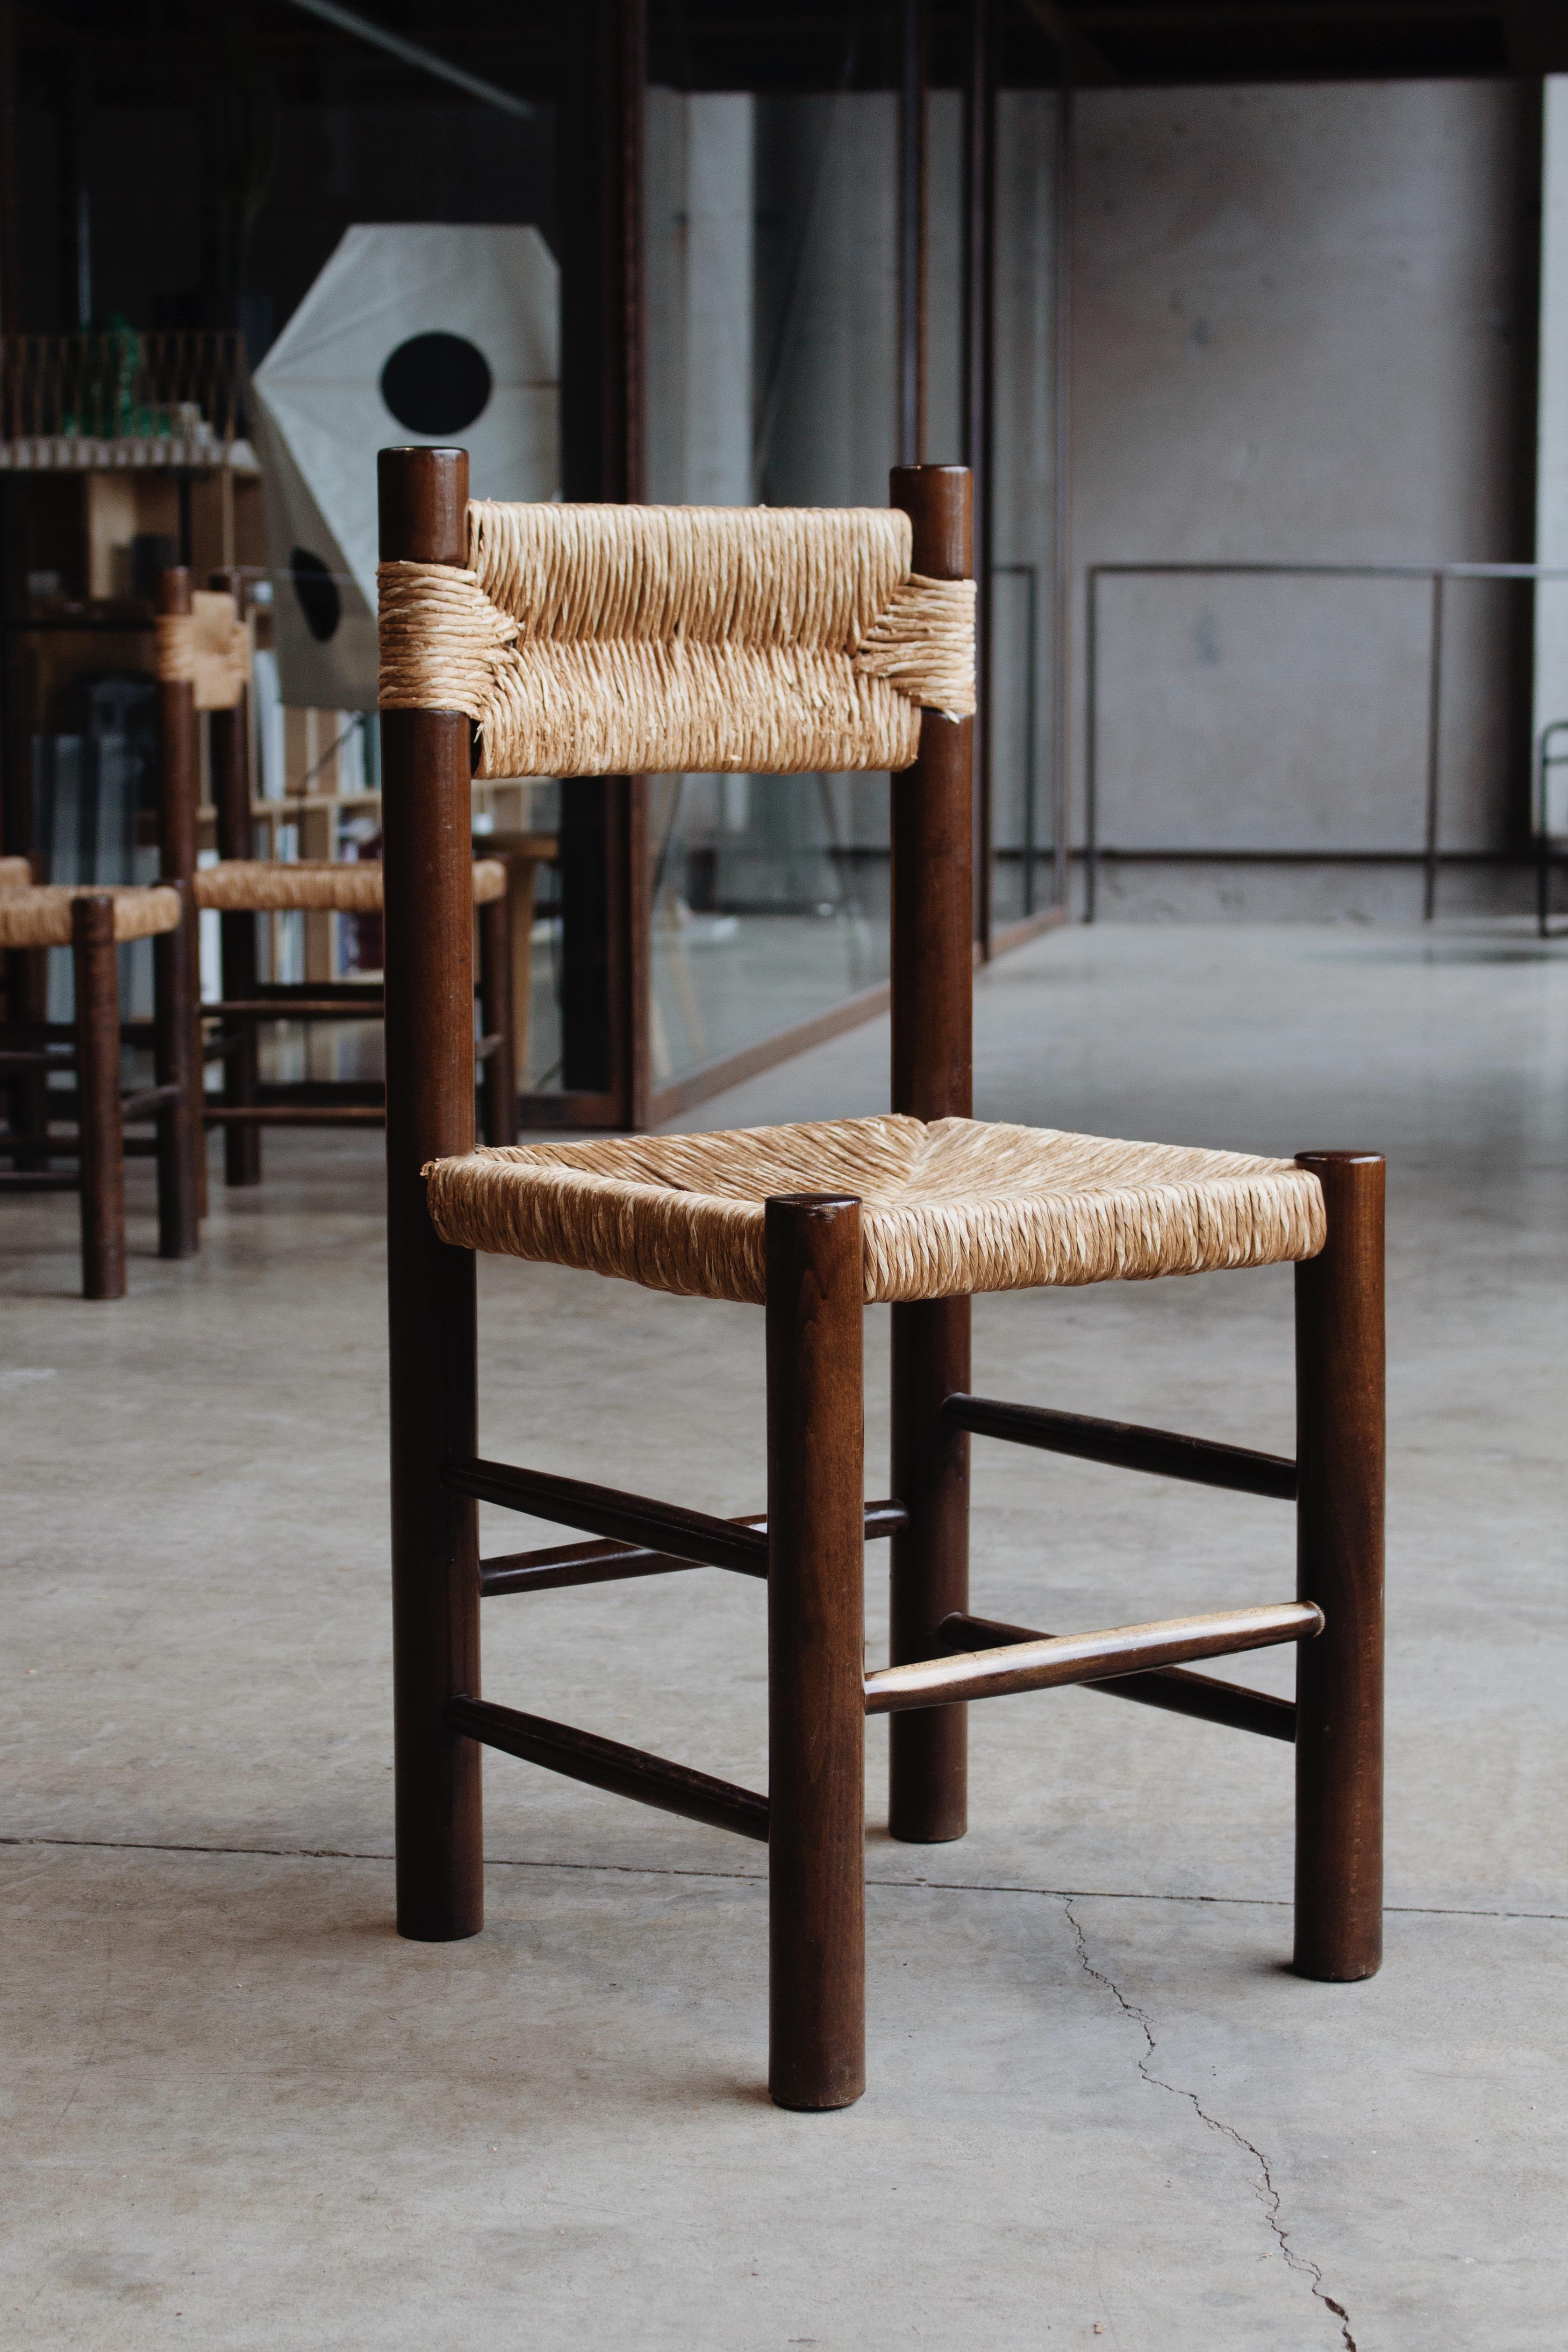 Chaises de salle à manger Charlotte Perriand pour Robert Sentou, paille et bois, France, 1964, ensemble de quatorze. 

Les chaises ont un design simple et intemporel. Le dossier et l'assise fantaisie en paille combinés à la structure en bois de pin